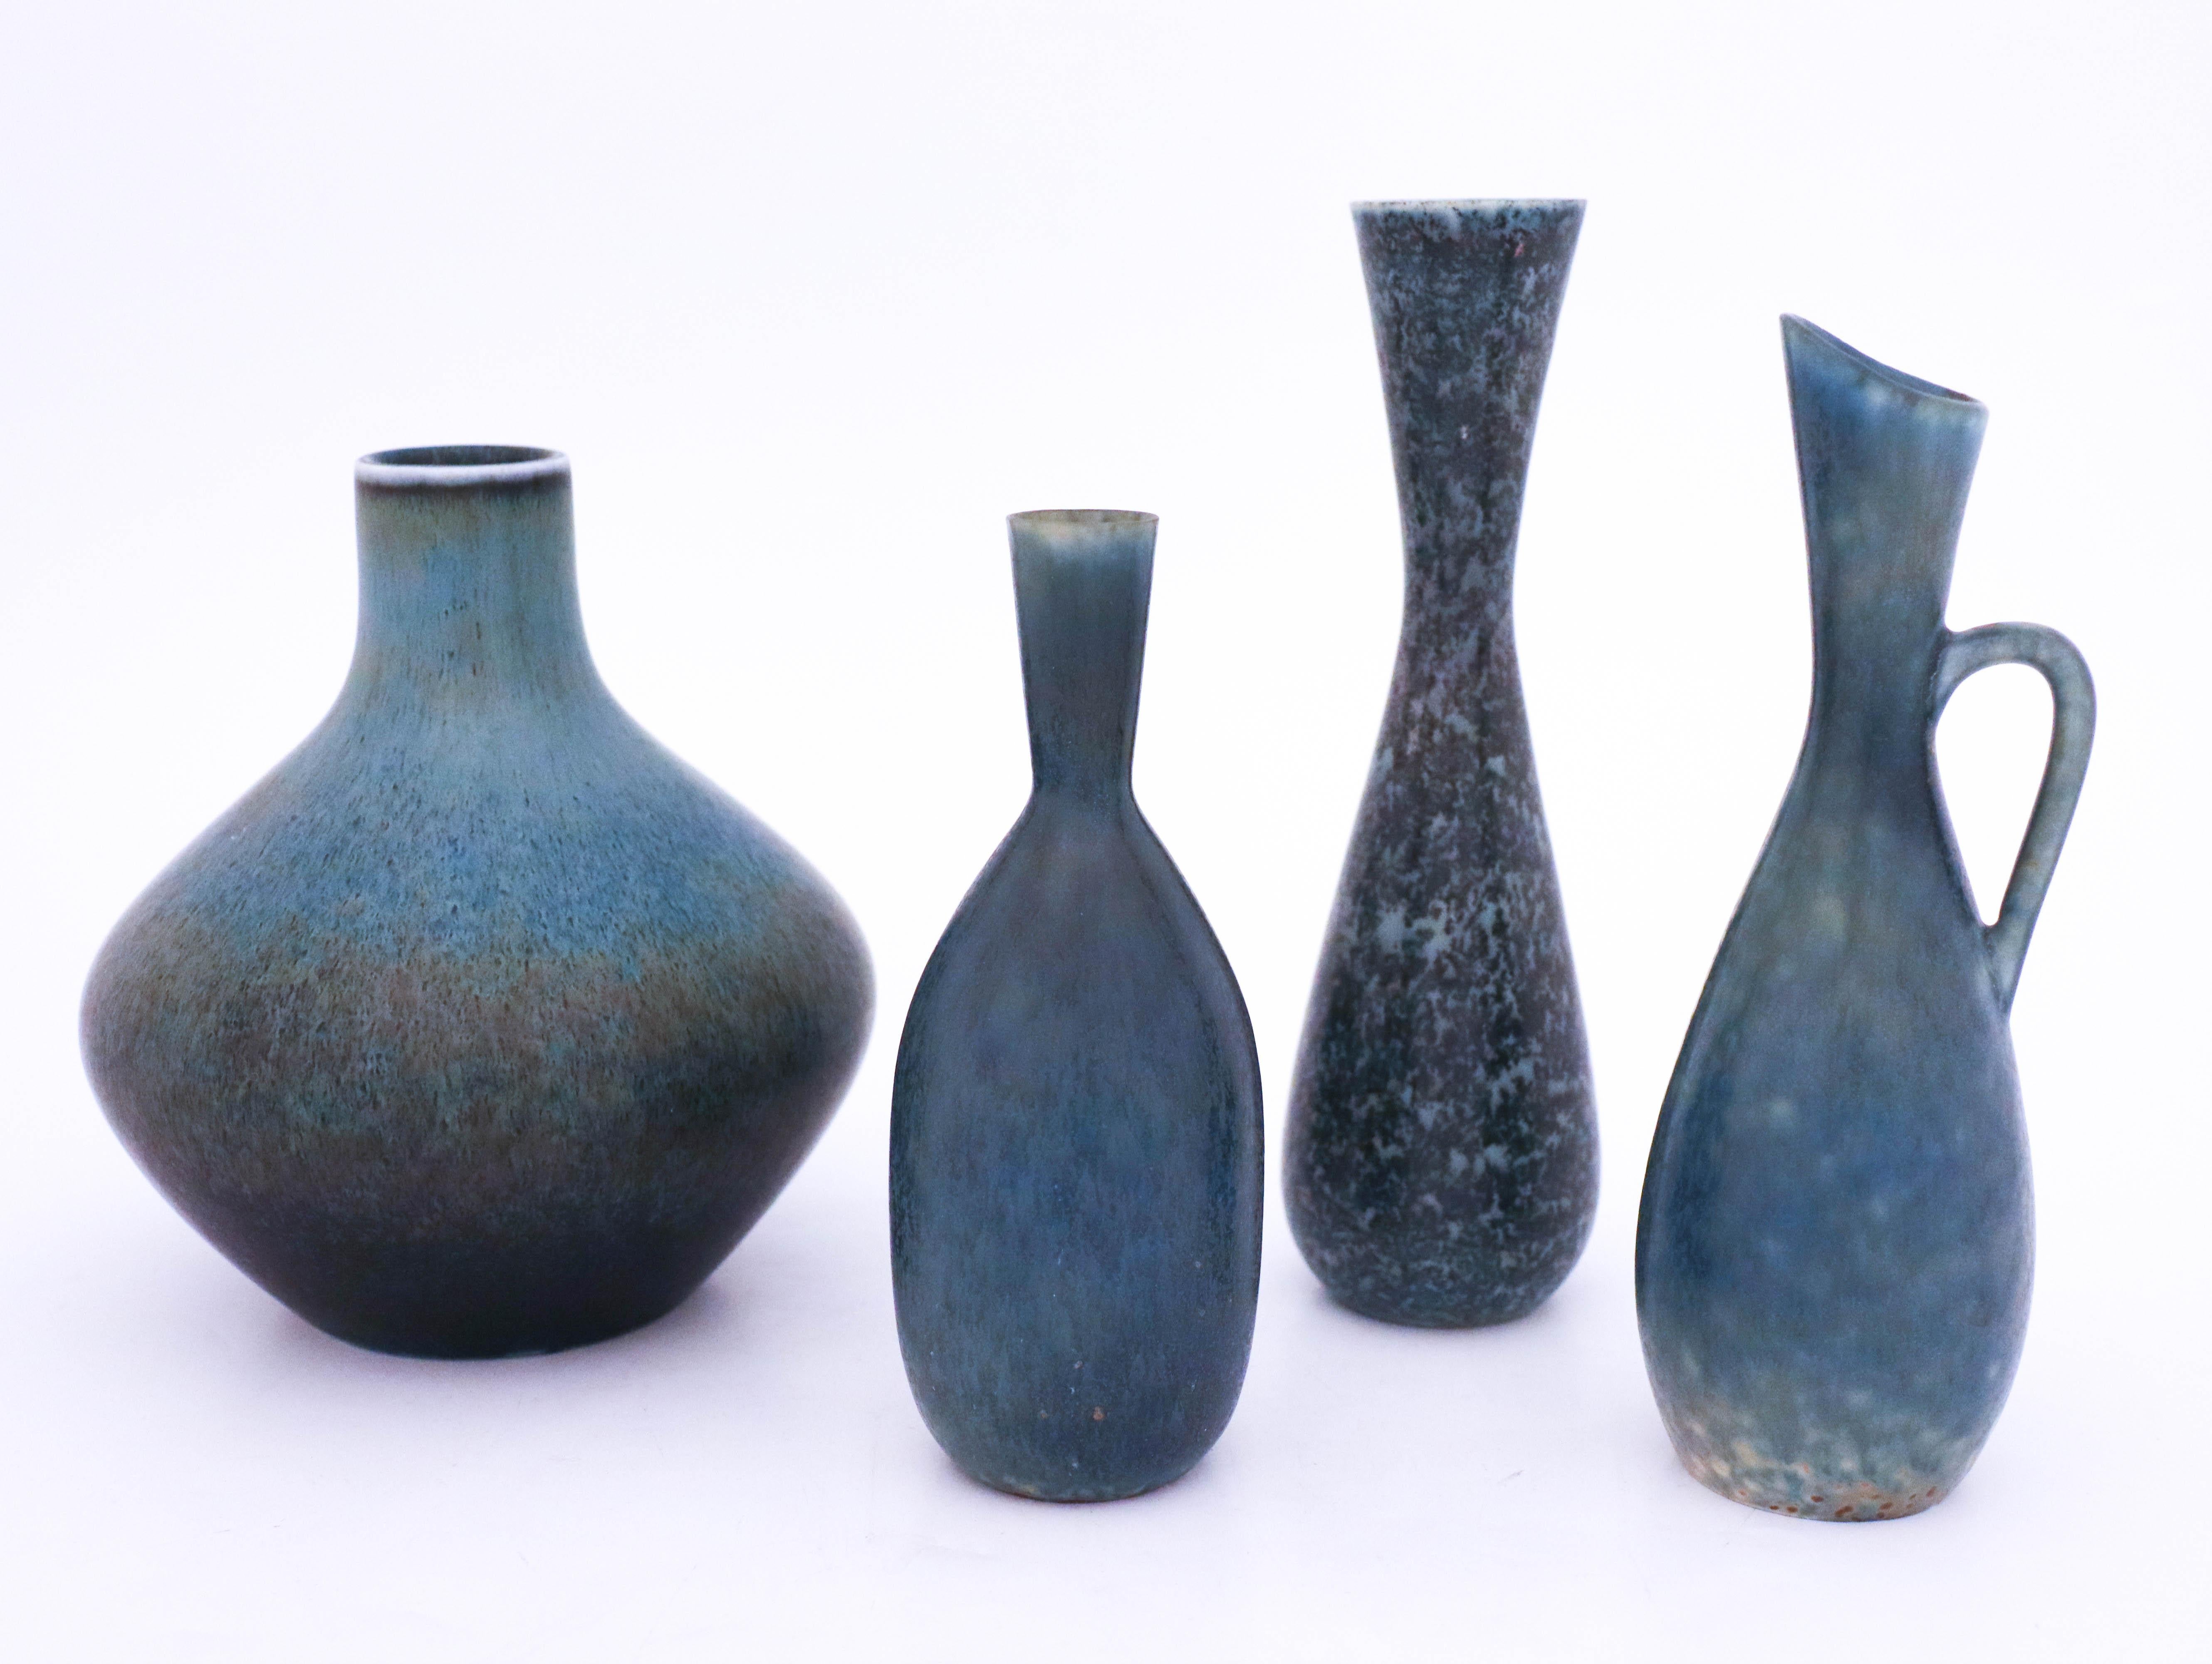 Scandinavian Modern Group of 4 Stoneware Vases, Carl-Harry Stålhane, Rörstrand, 1950s